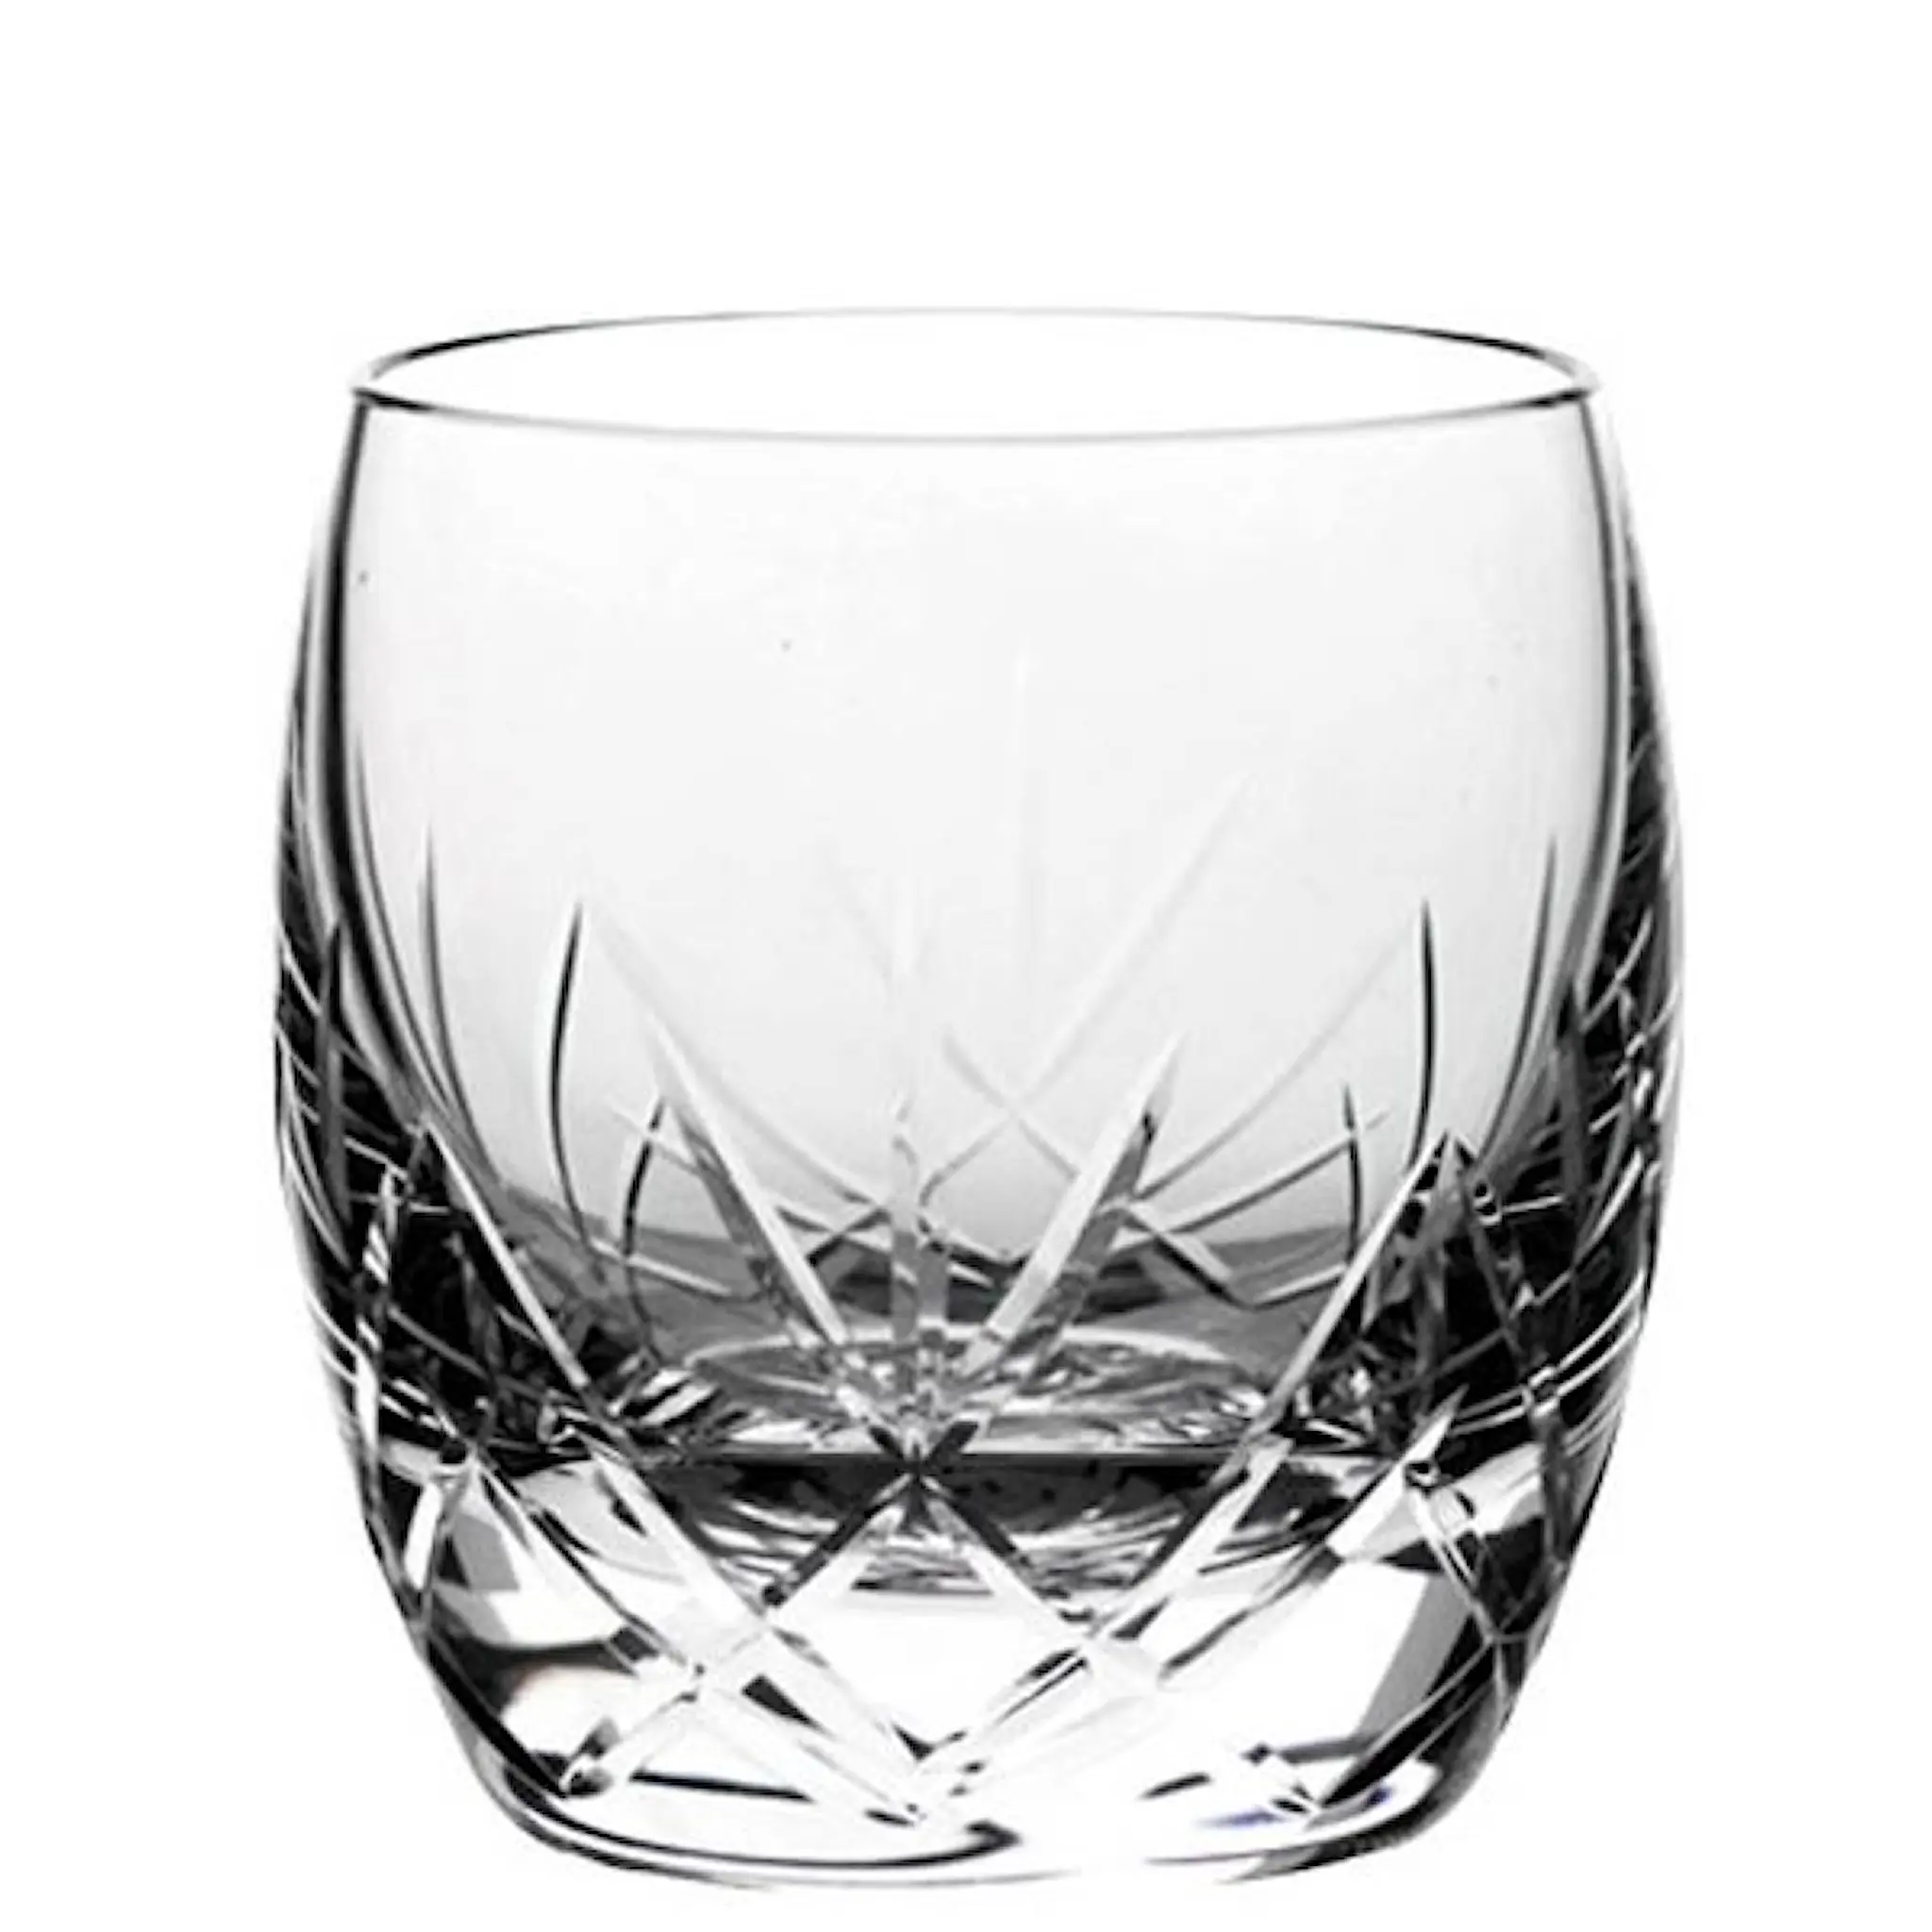 Magnor Alba Antique Whiskyglas 30 cl Klar